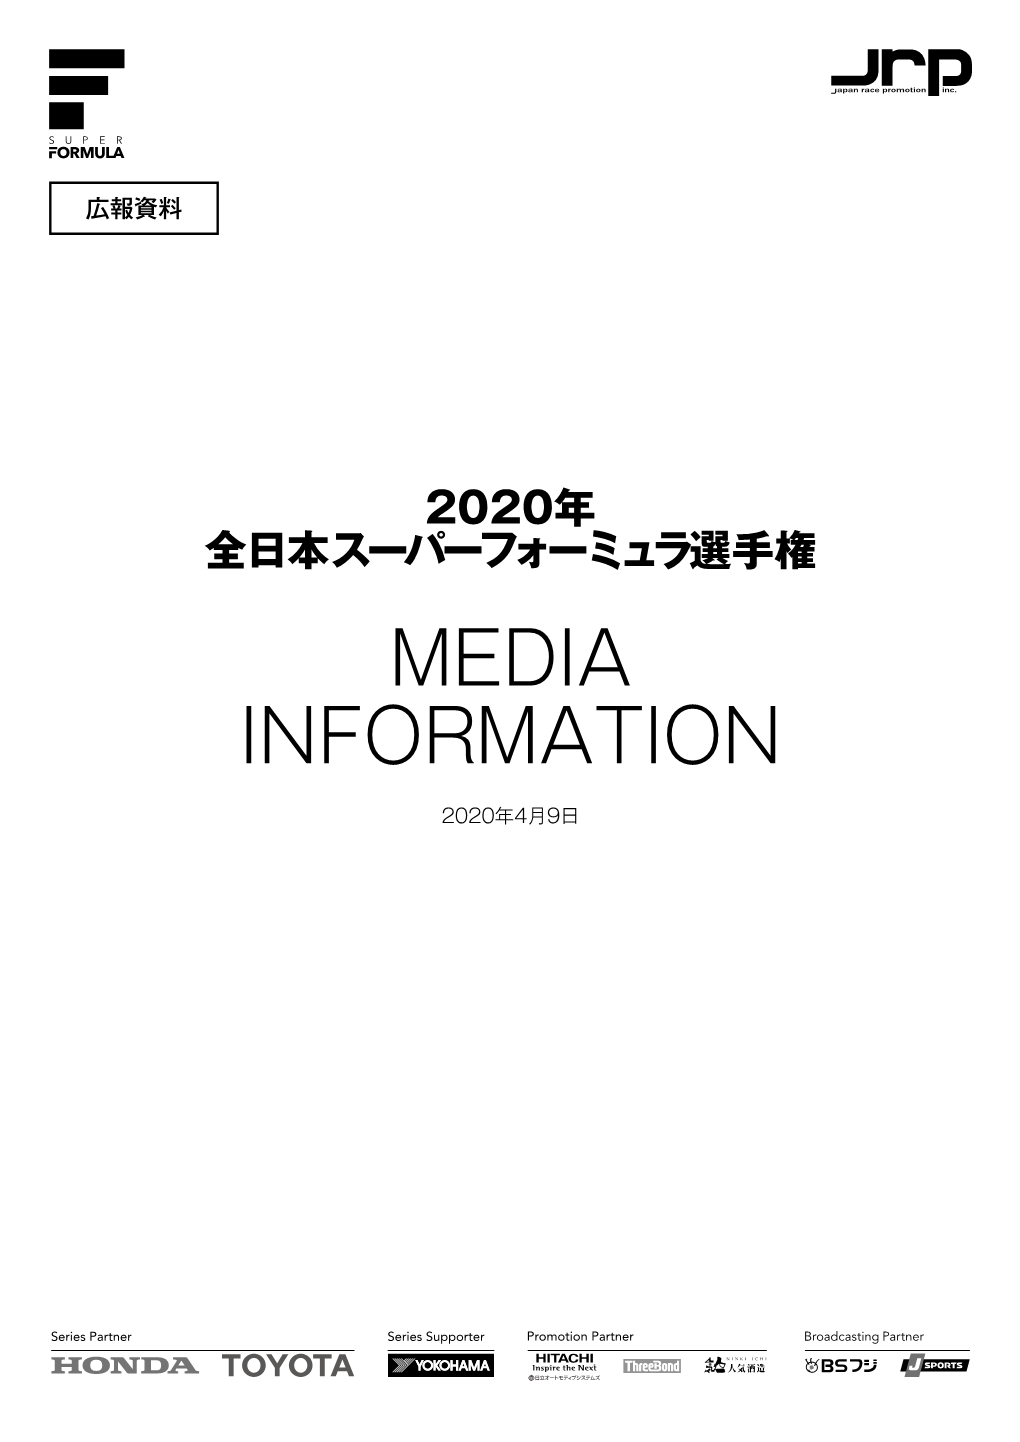 2020年 Media Information